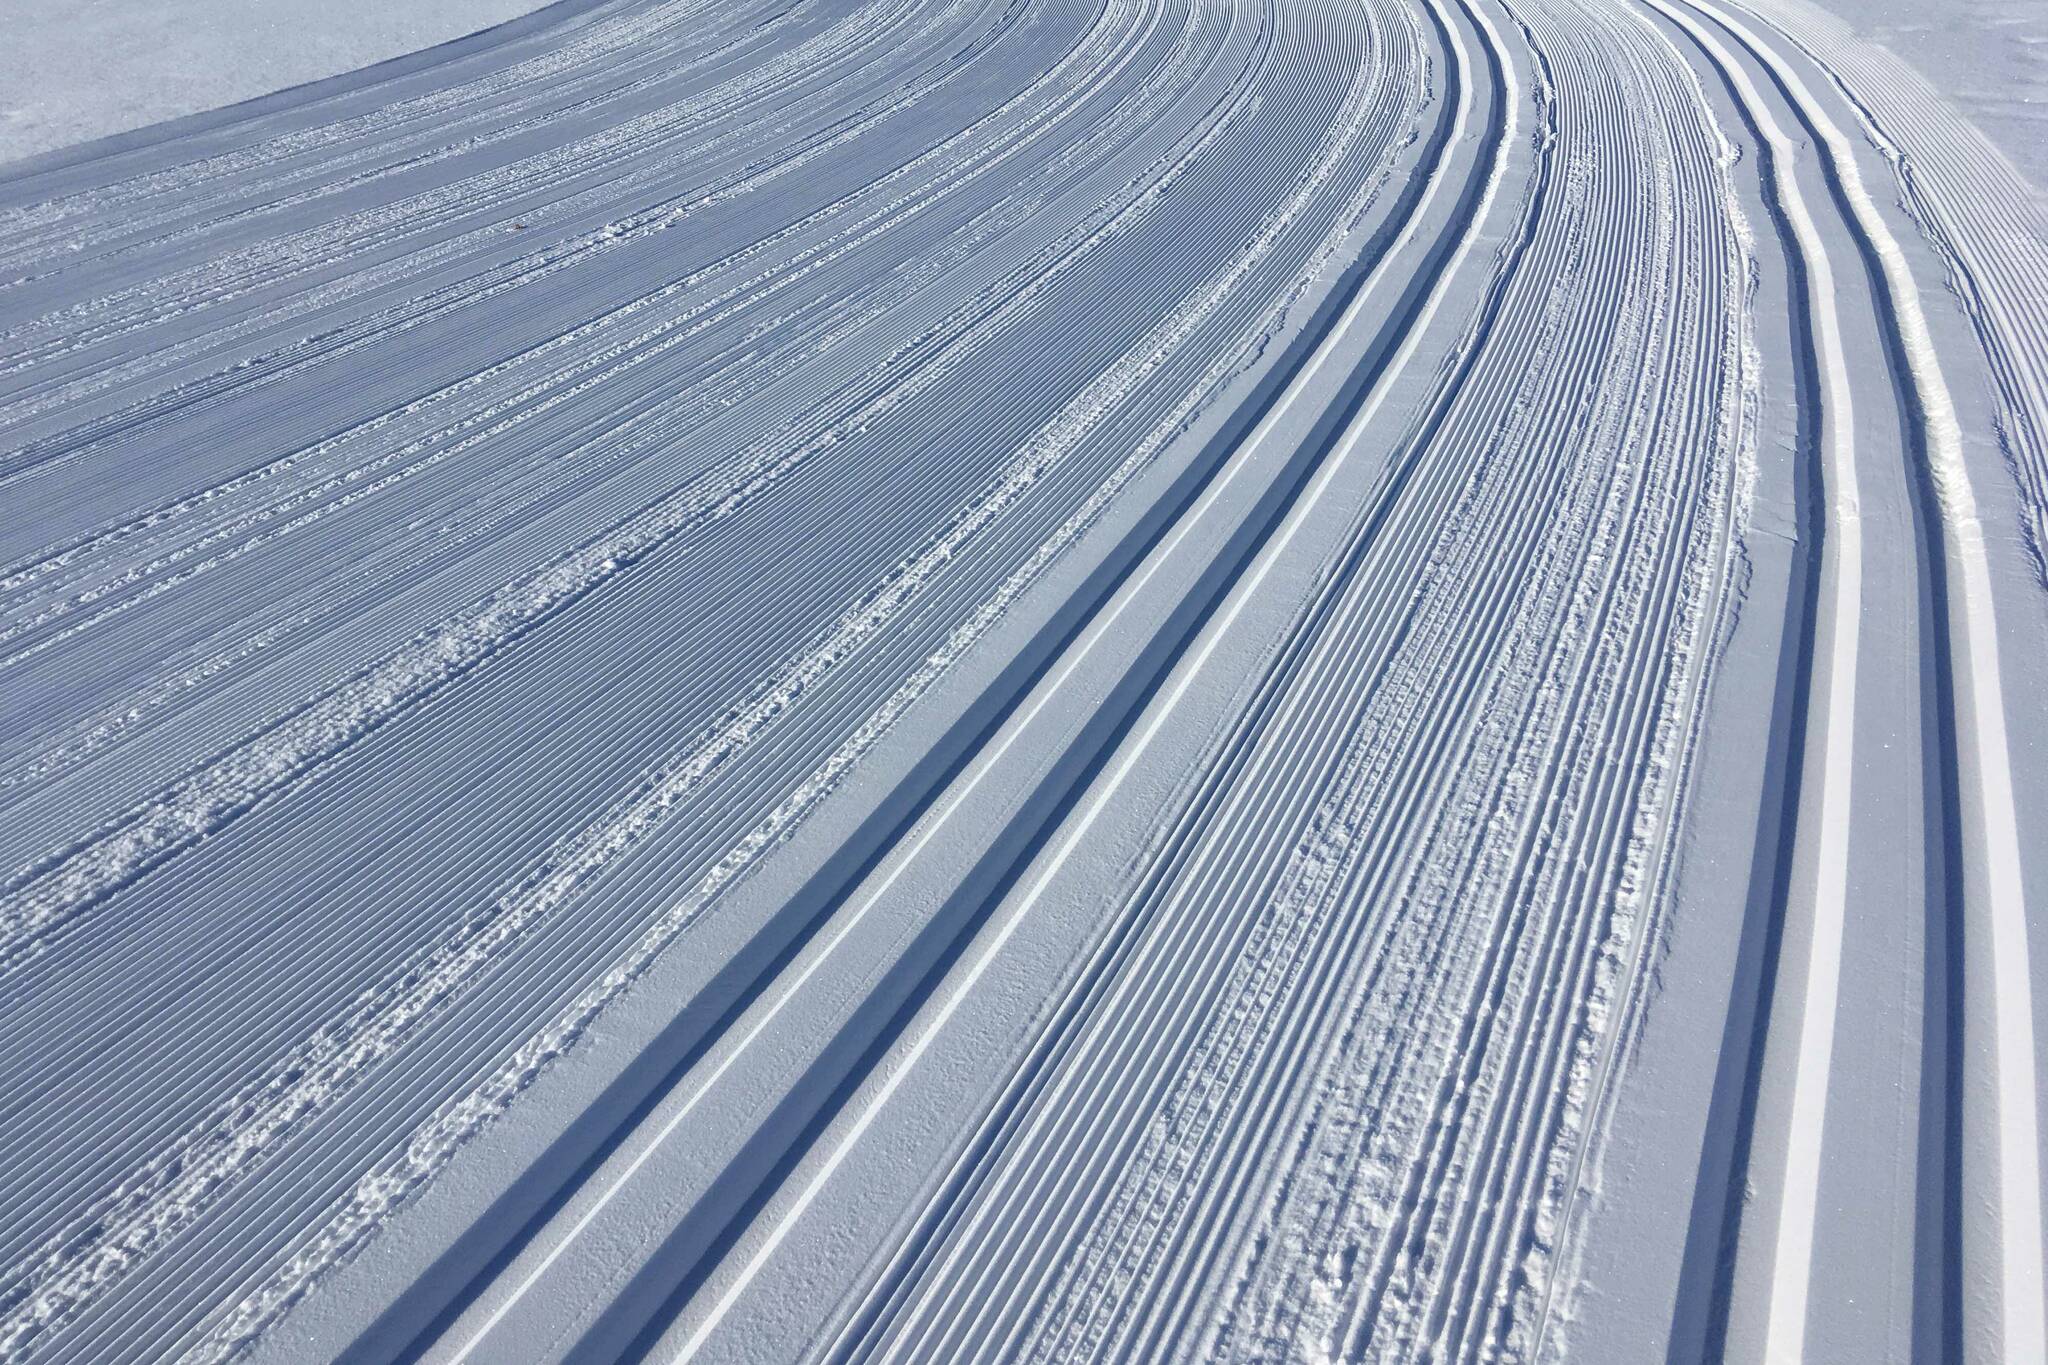 Ski trails. (Photo by Jeff Helminiak)